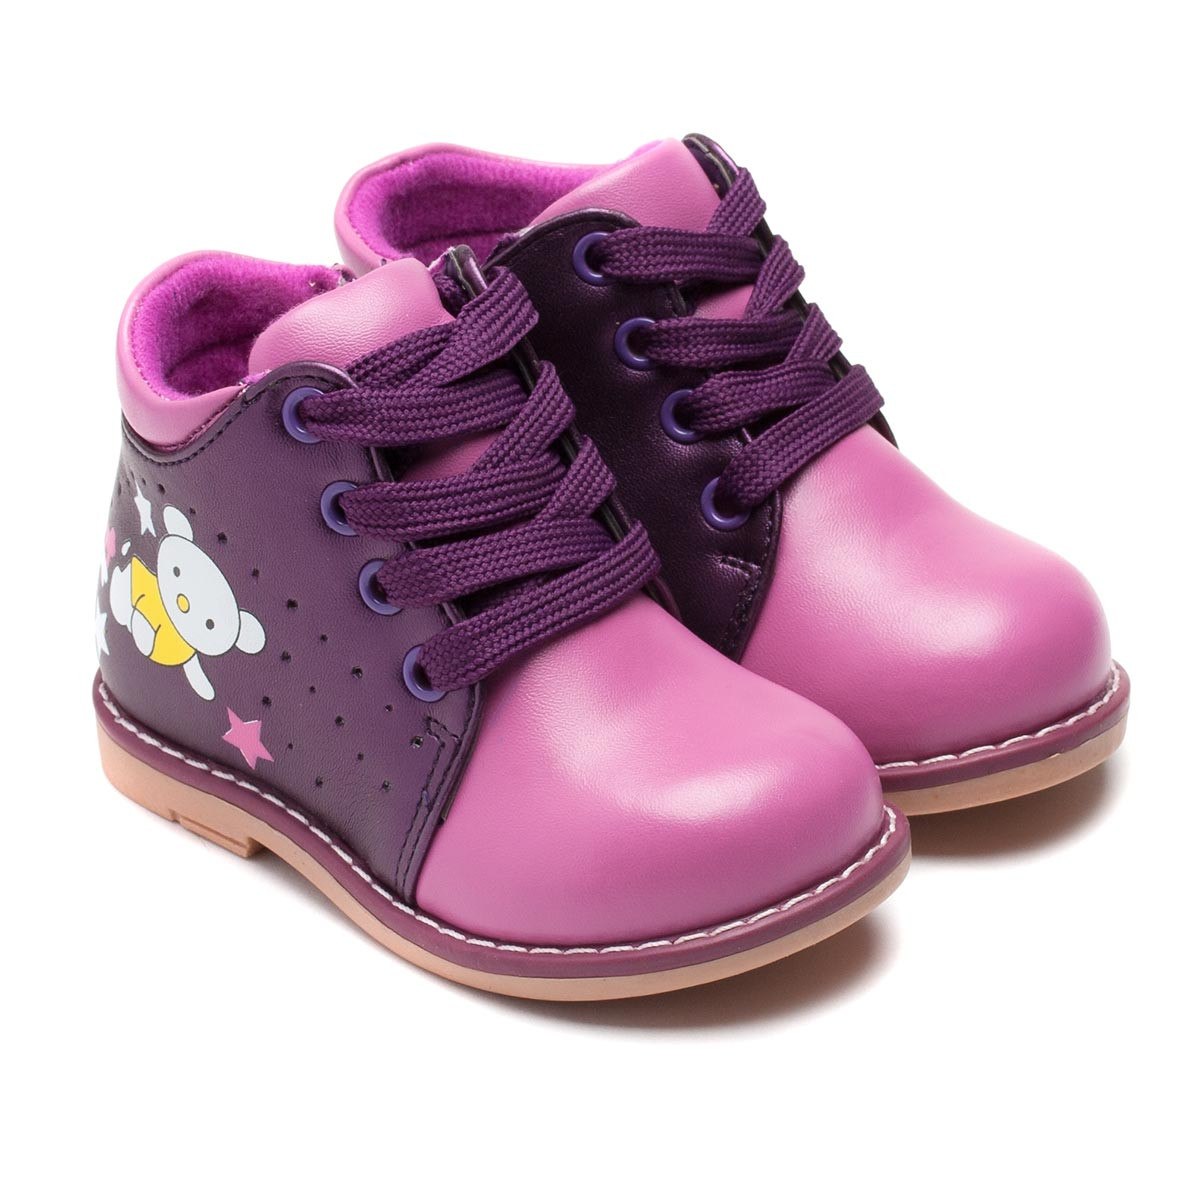 Валберис обувь туфли. Ботинки на валберис весенние для девочек. Детская обувь. Весенние ботинки для девочки.